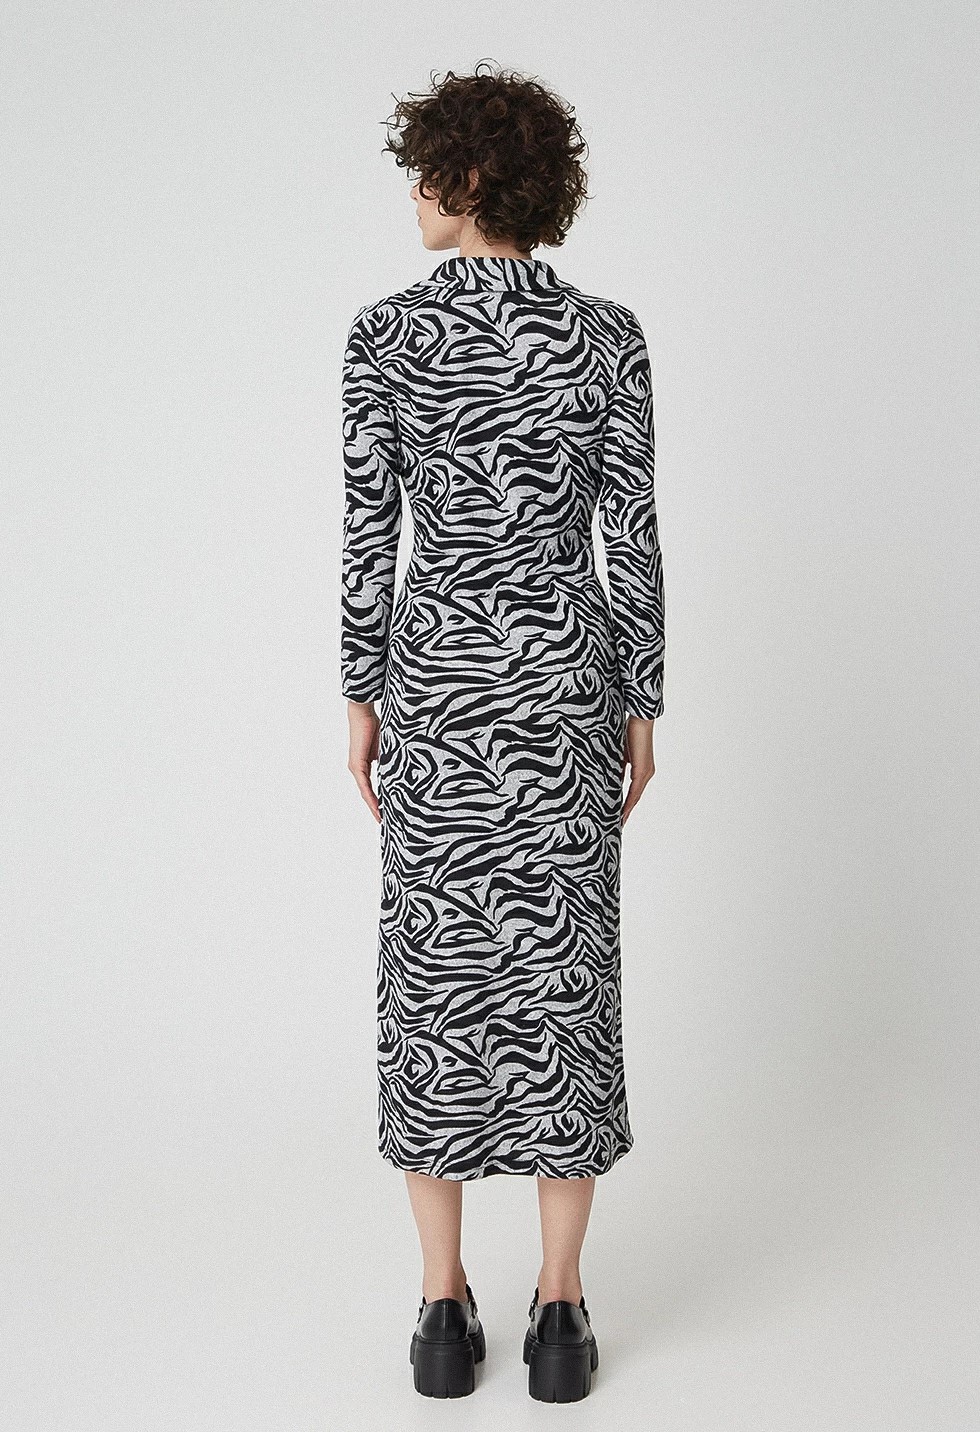 Πλεκτό φόρεμα animal print, DÉSIRÉE image 1